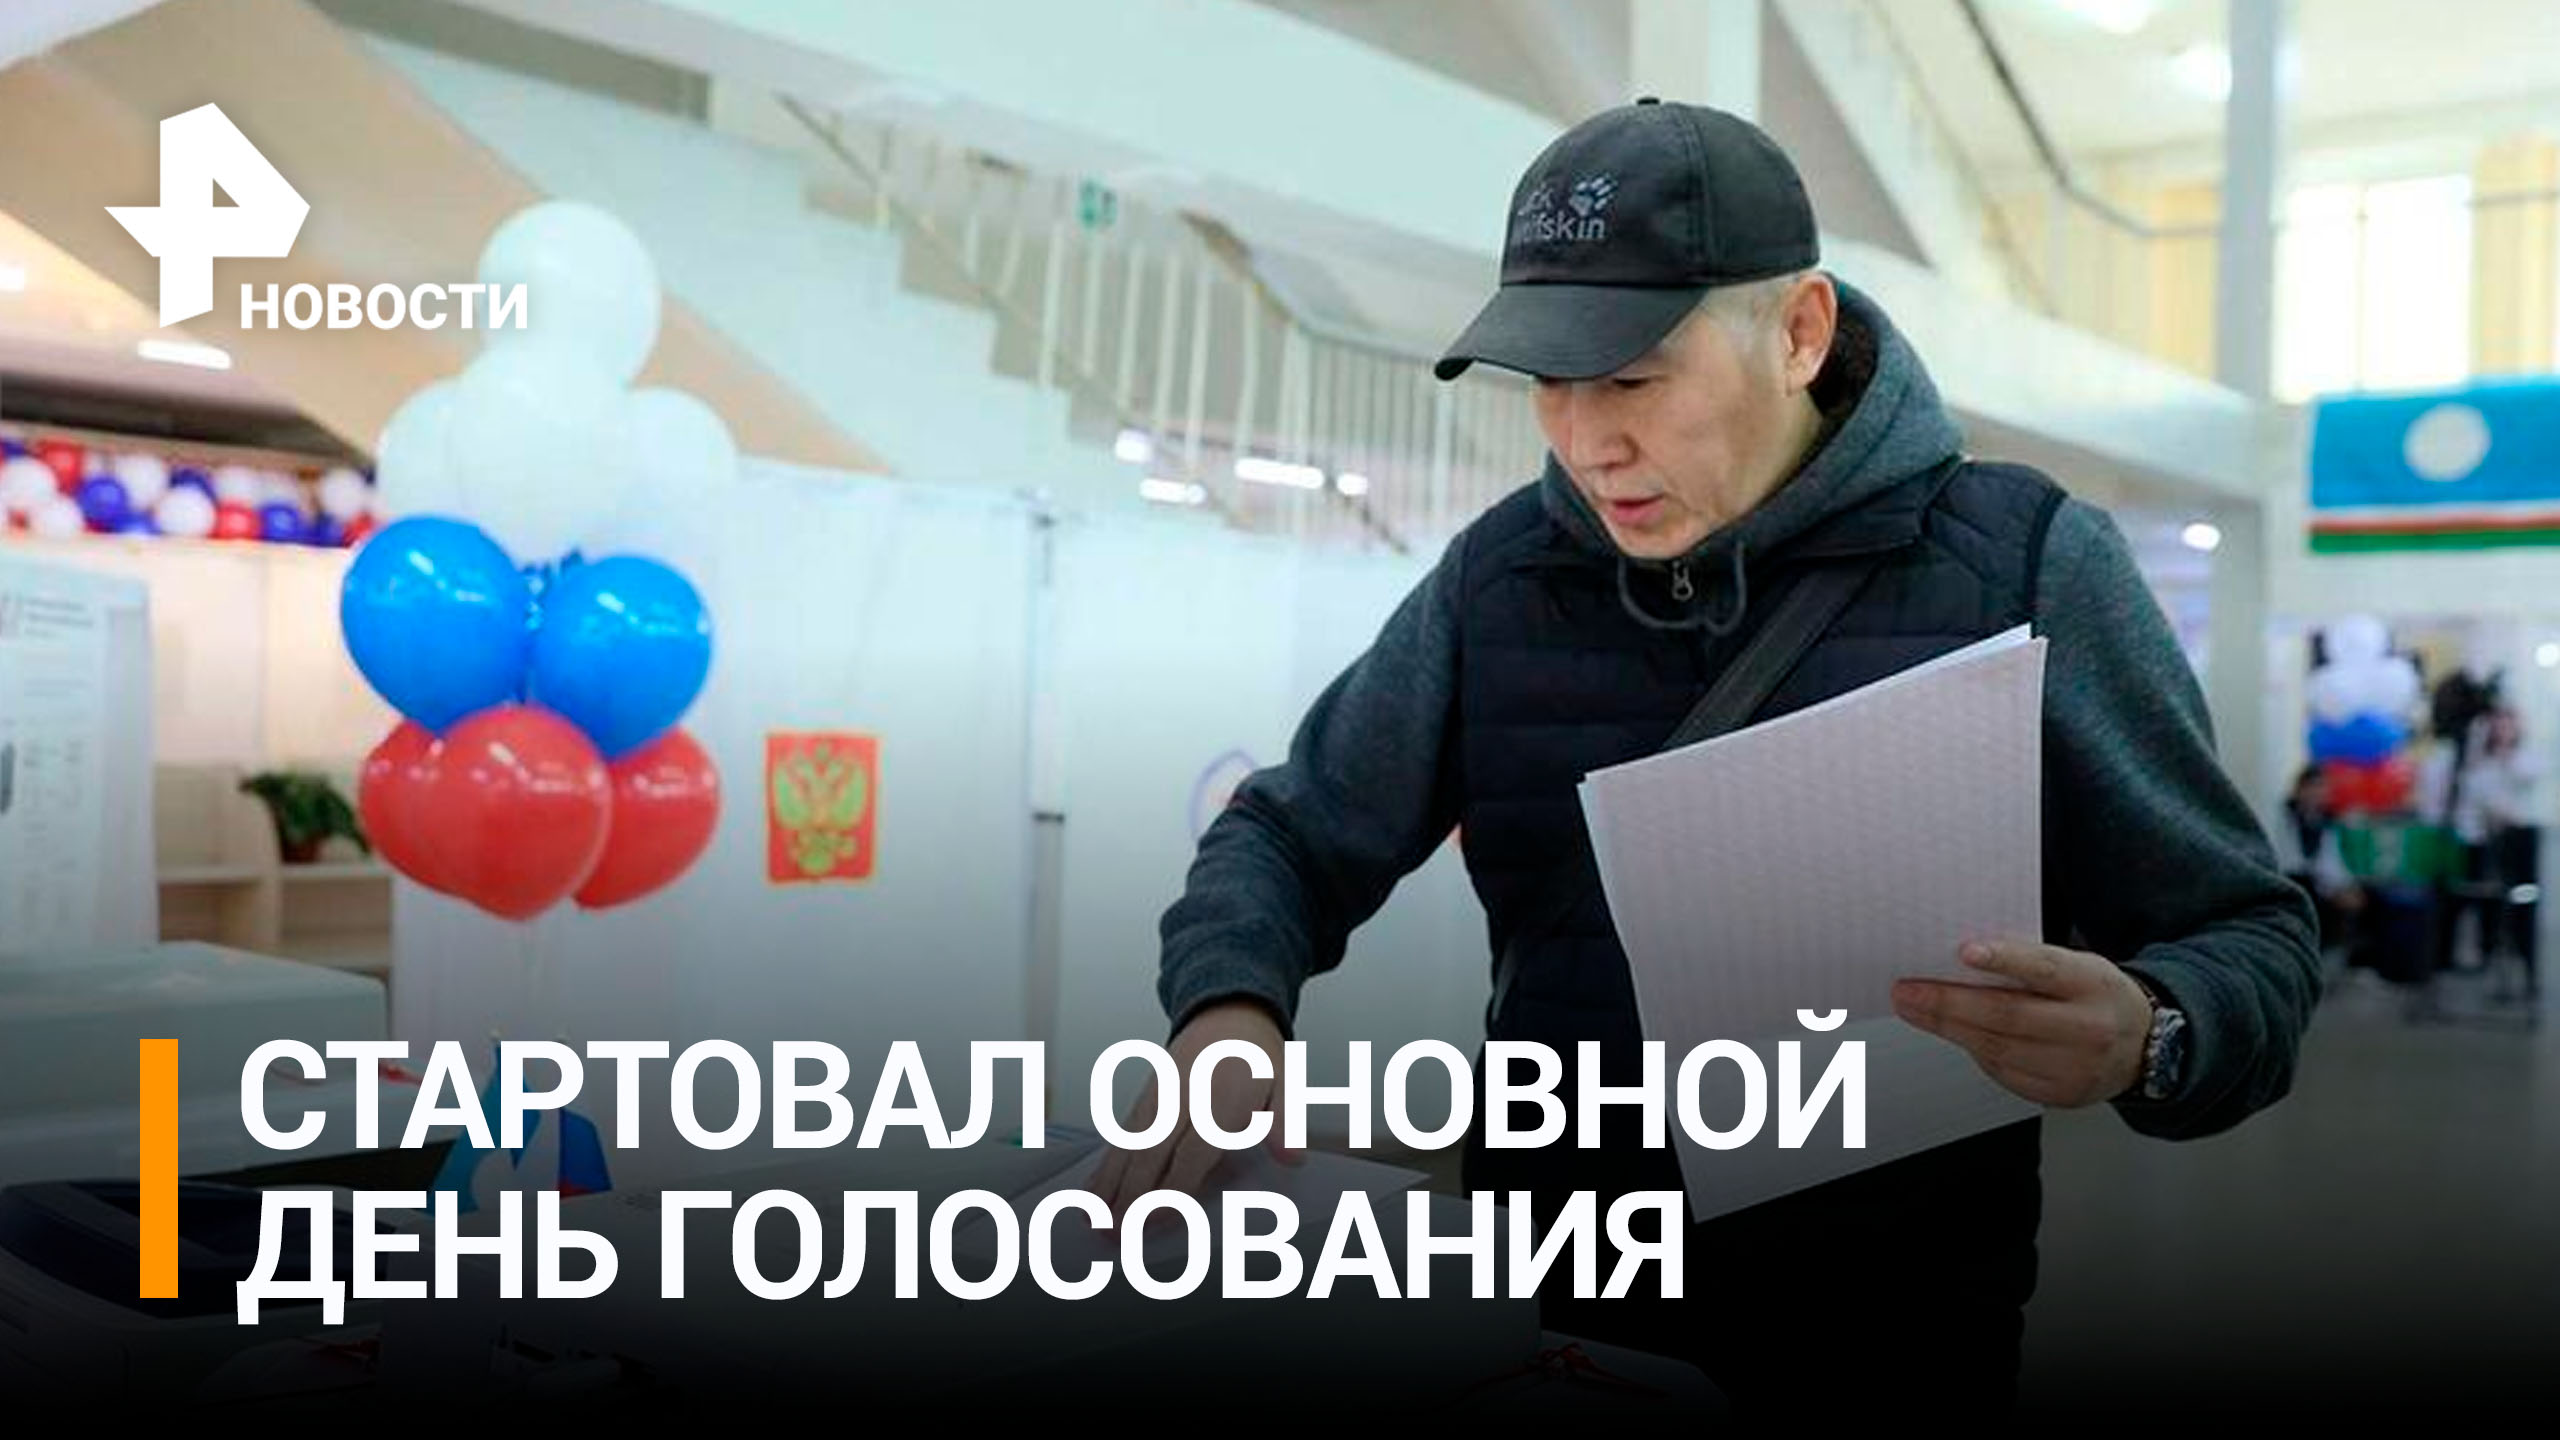 Основной день голосования на выборах стартовал в России / РЕН Новости